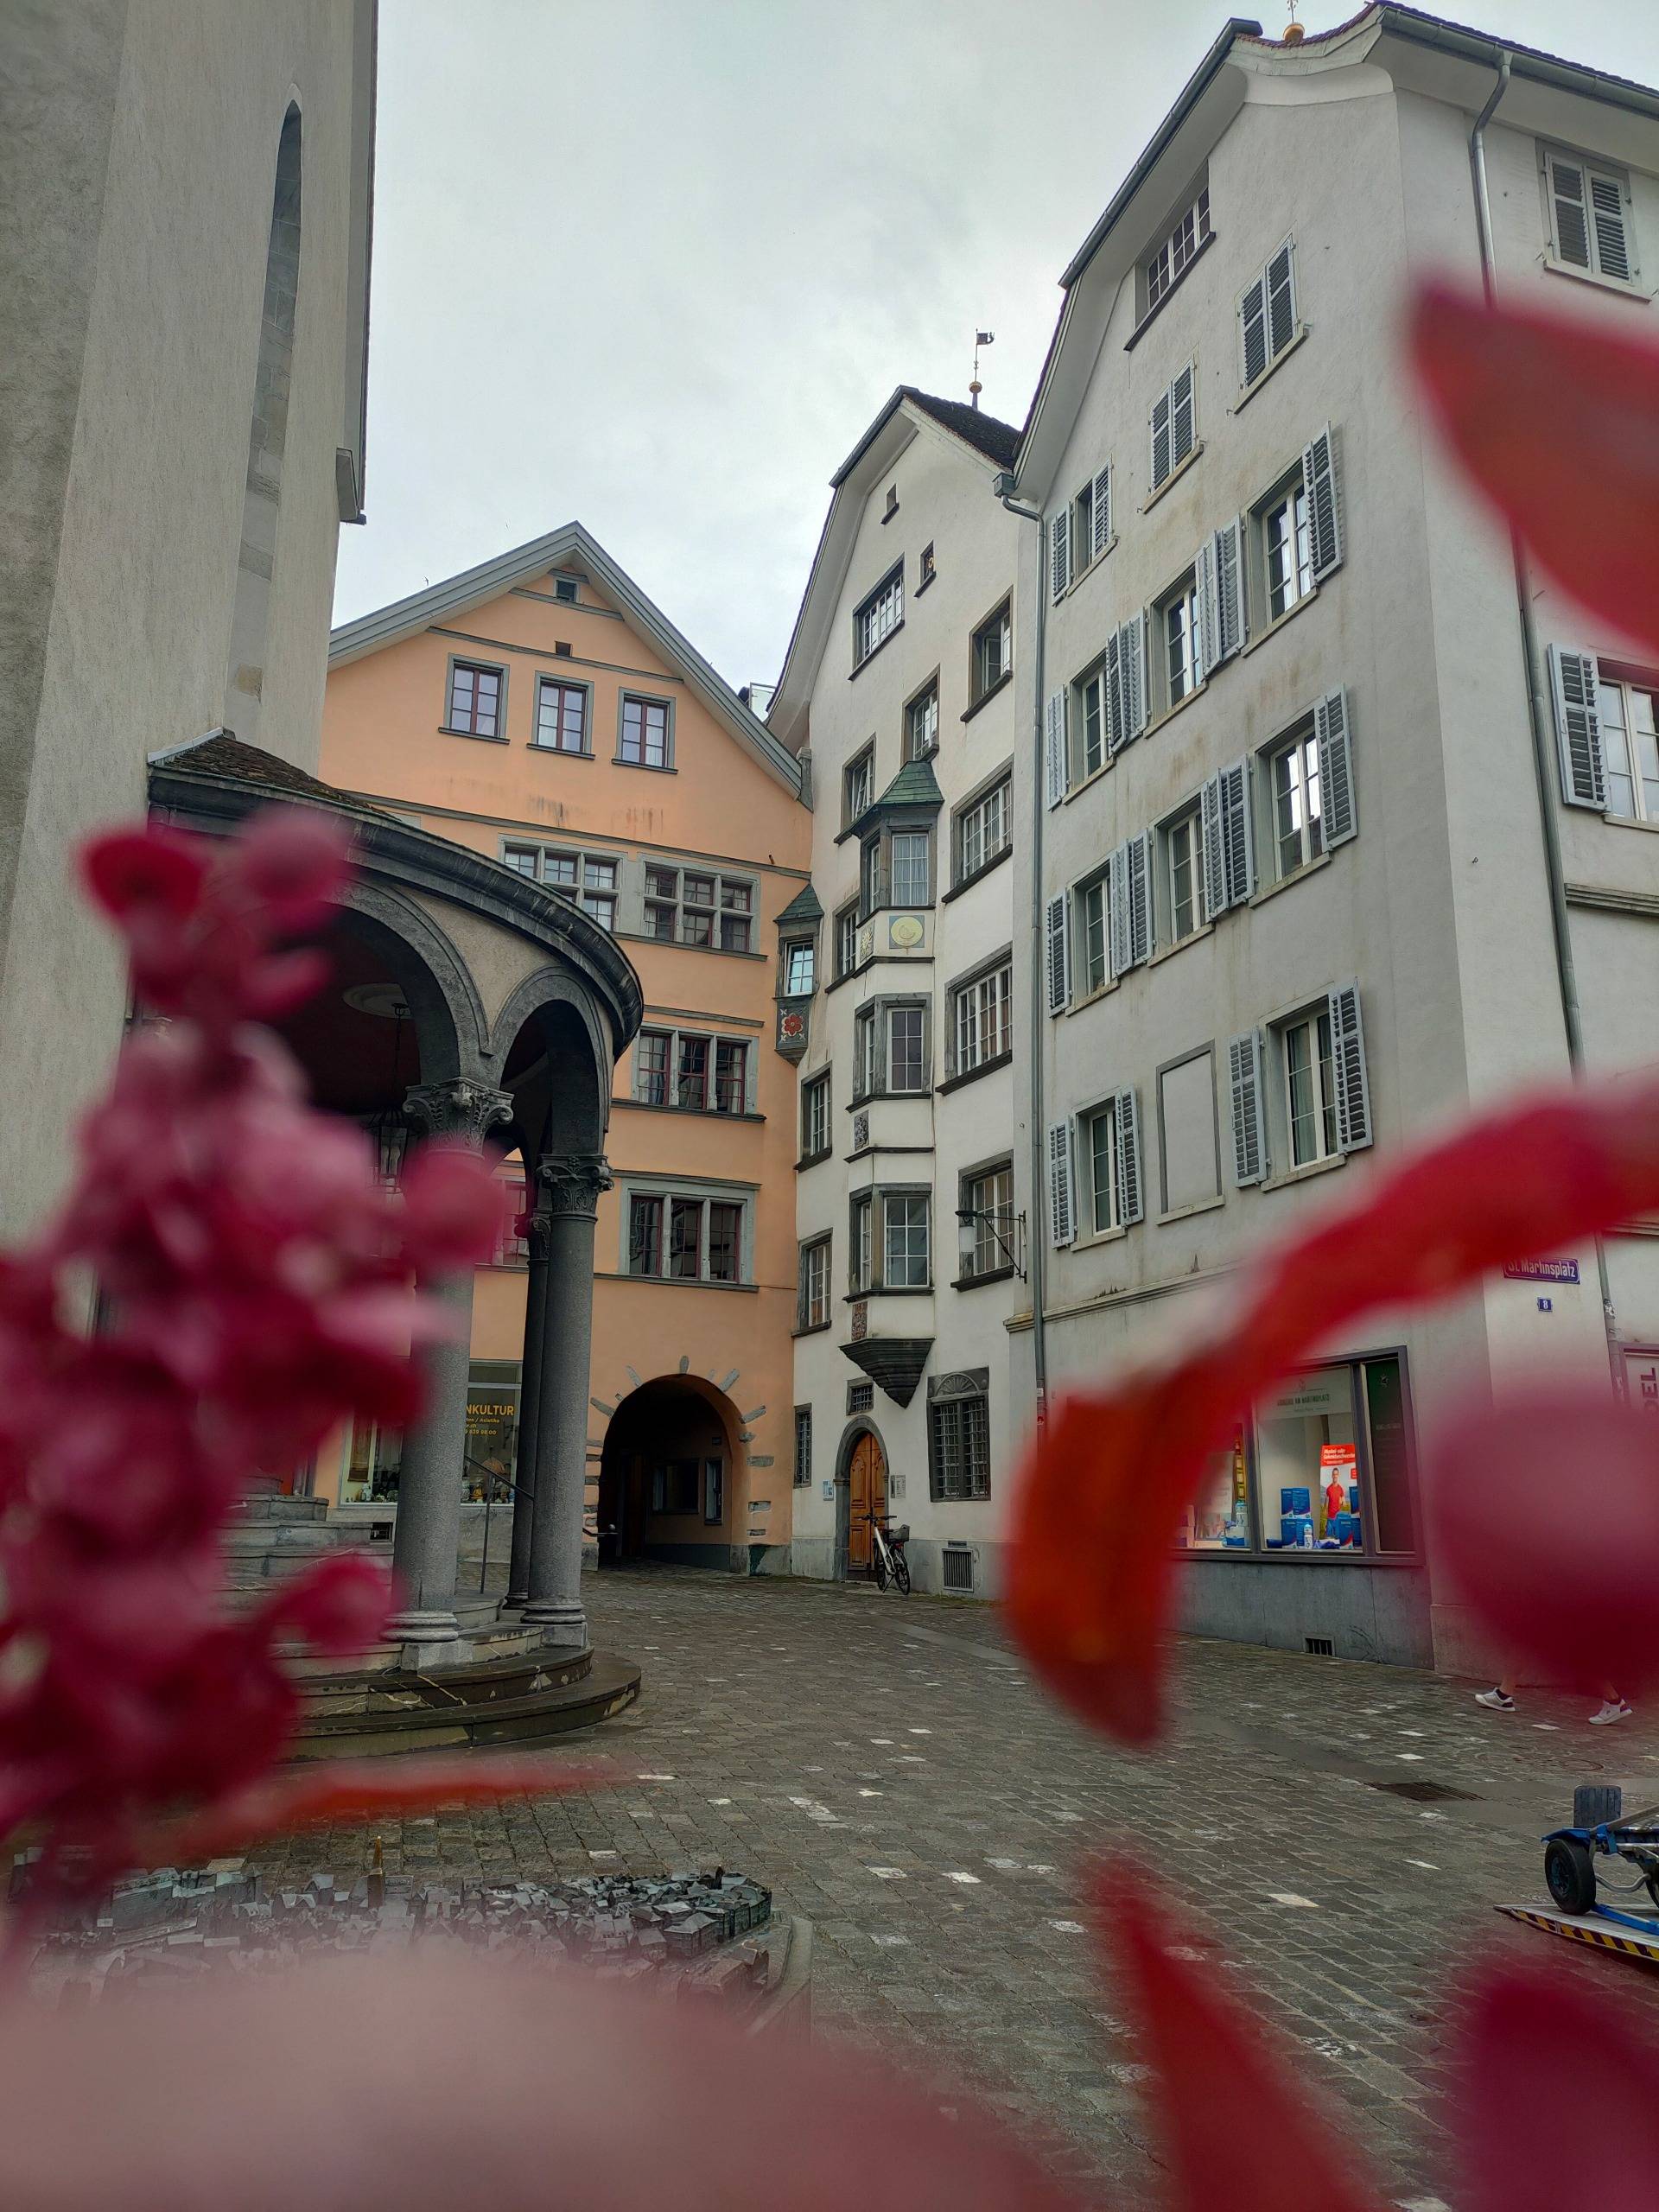 One of the oldest Swiss cities - Chur, Graubunden - LAAX stories #3 